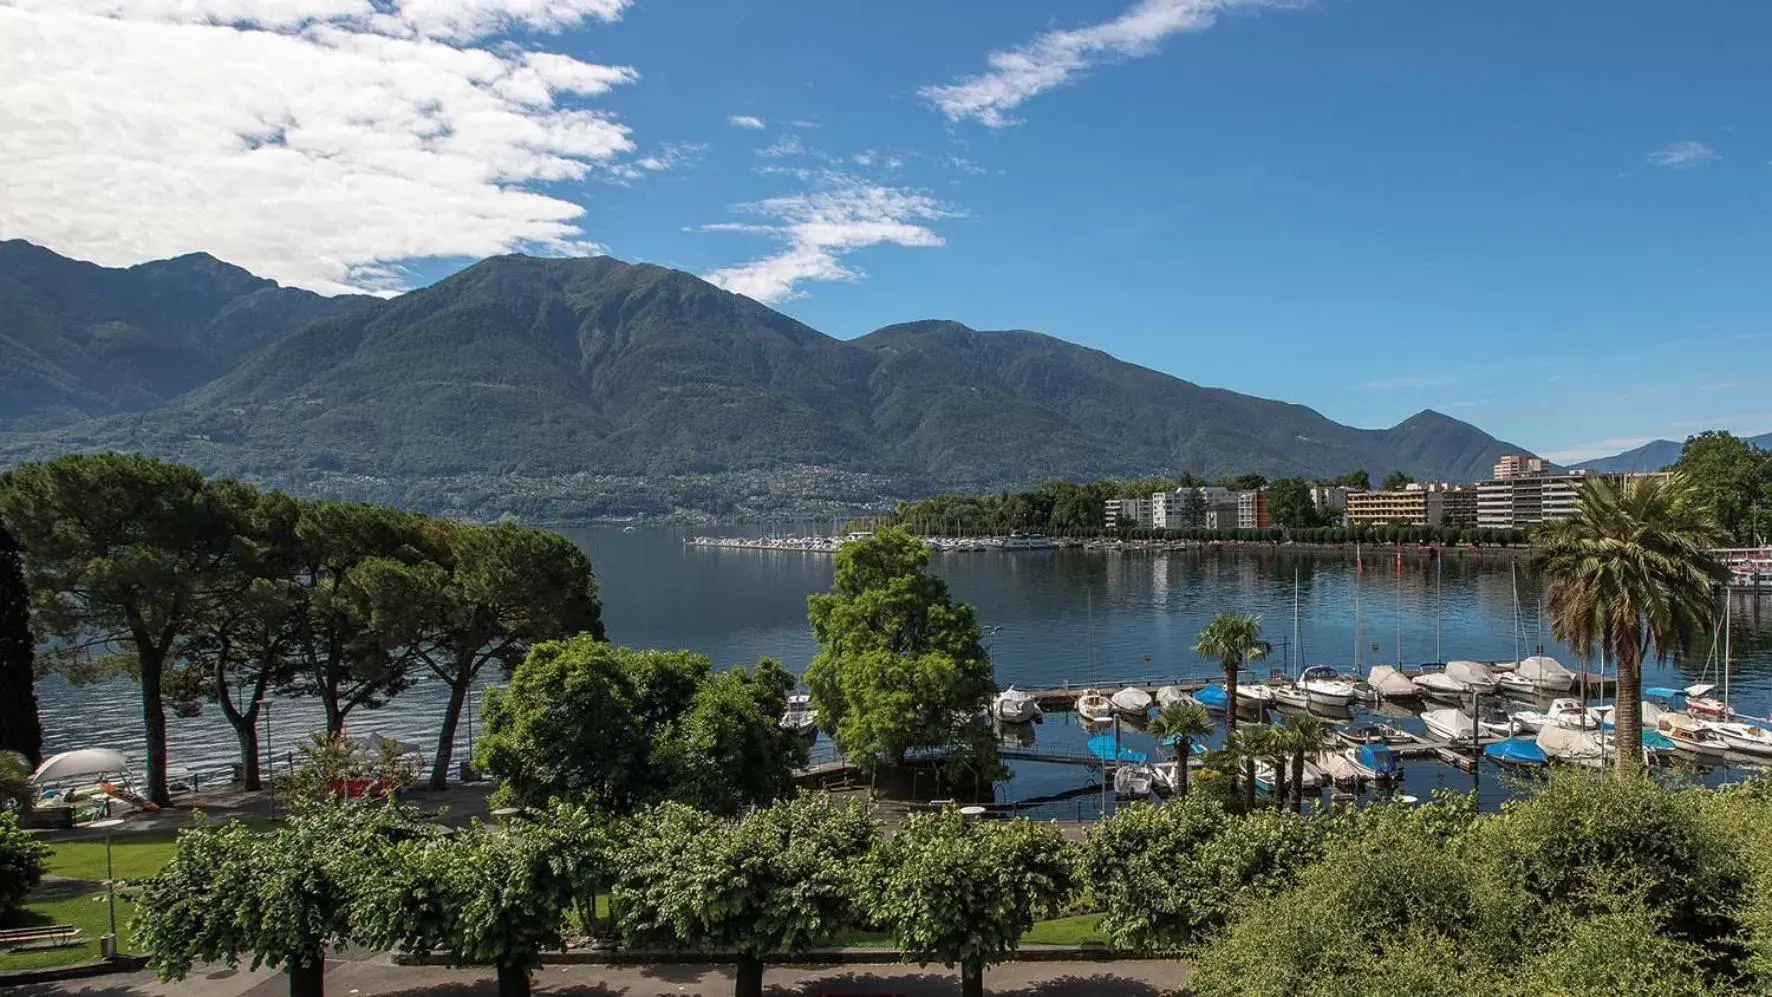 City view in Hotel Lago Maggiore - Welcome!